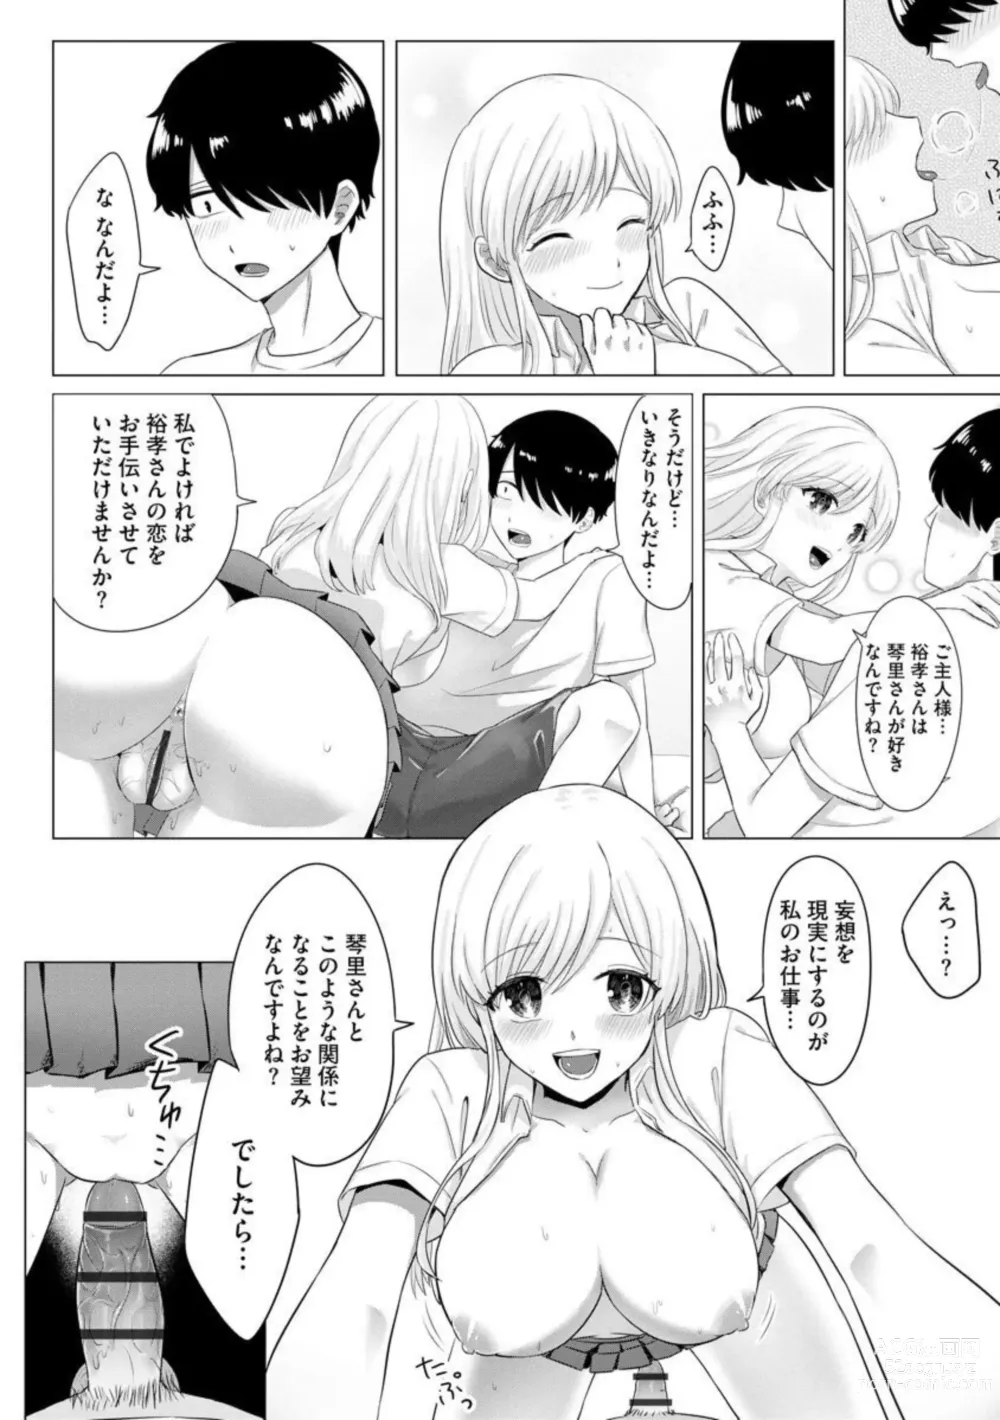 Page 16 of manga Mousou Chuumon 1